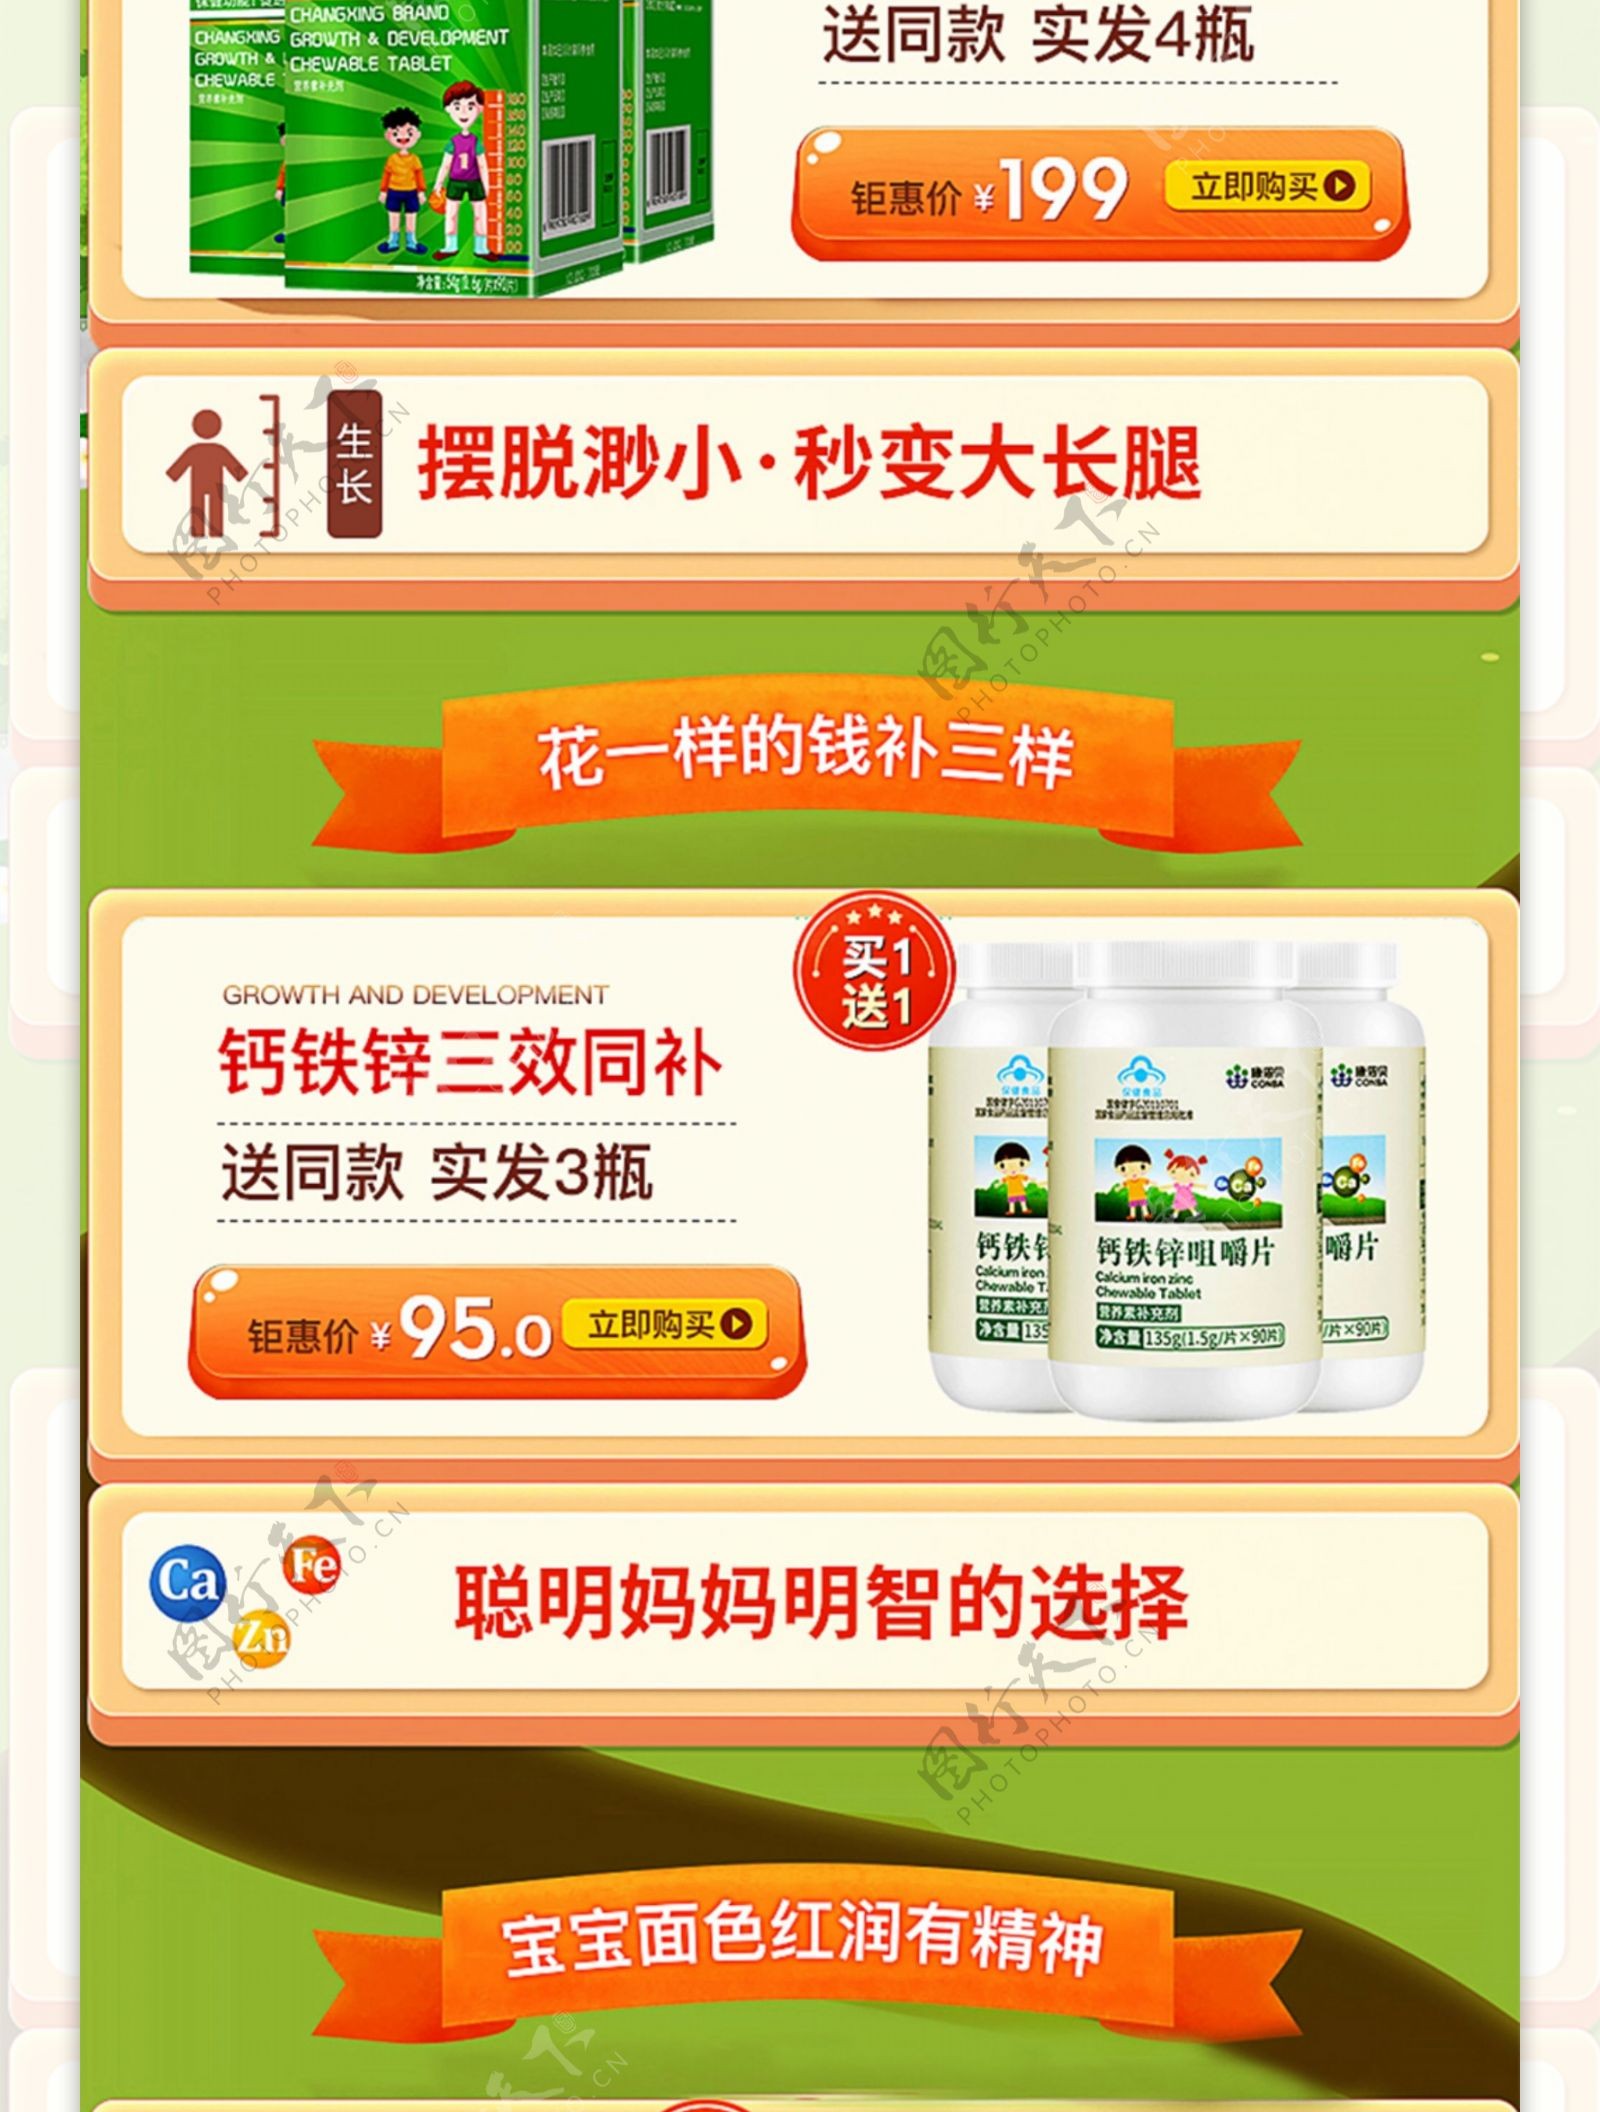 夏天旅游季日常活动京东保健食品无线端首页